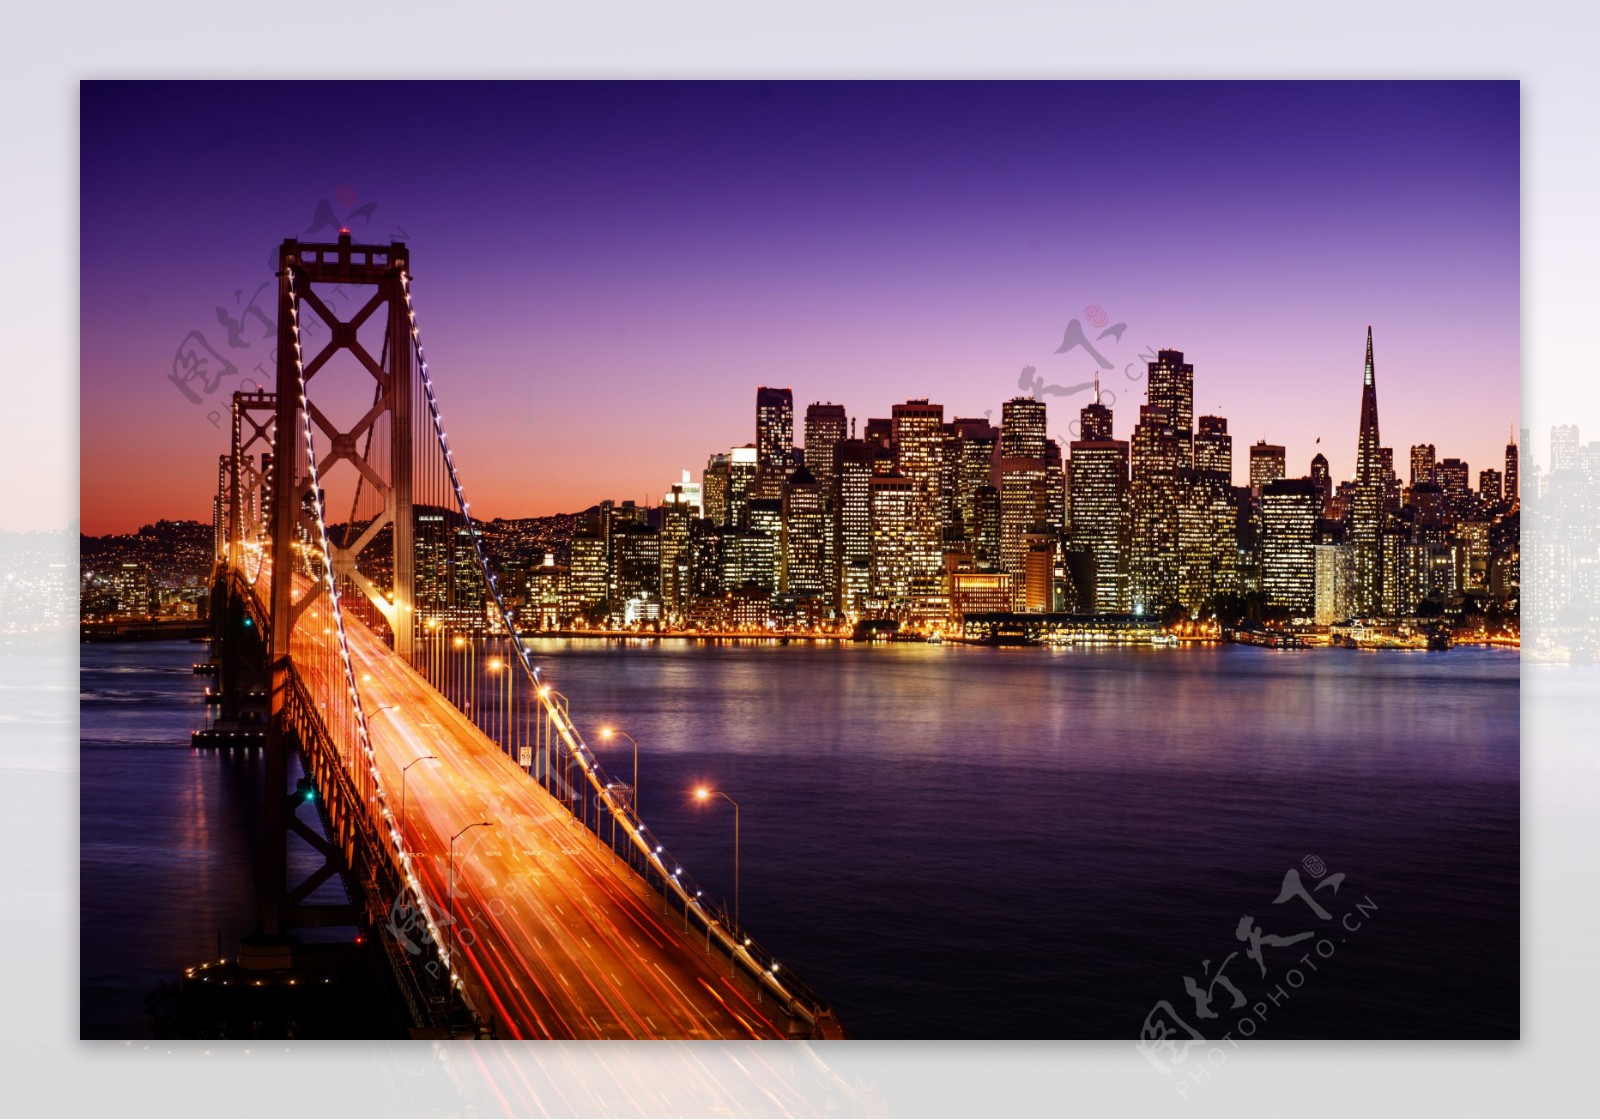 旧金山海湾大桥夜景图片